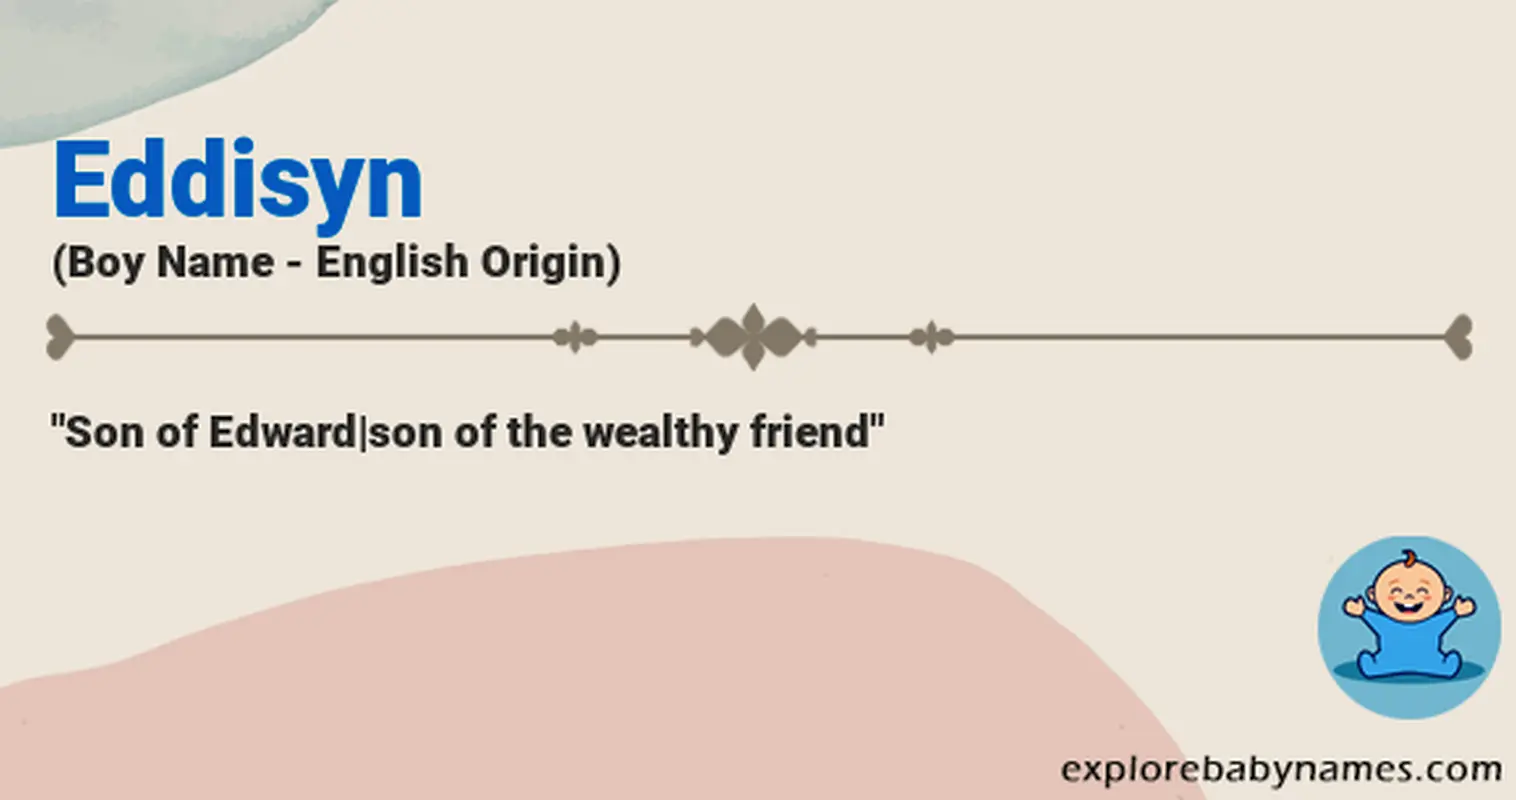 Meaning of Eddisyn